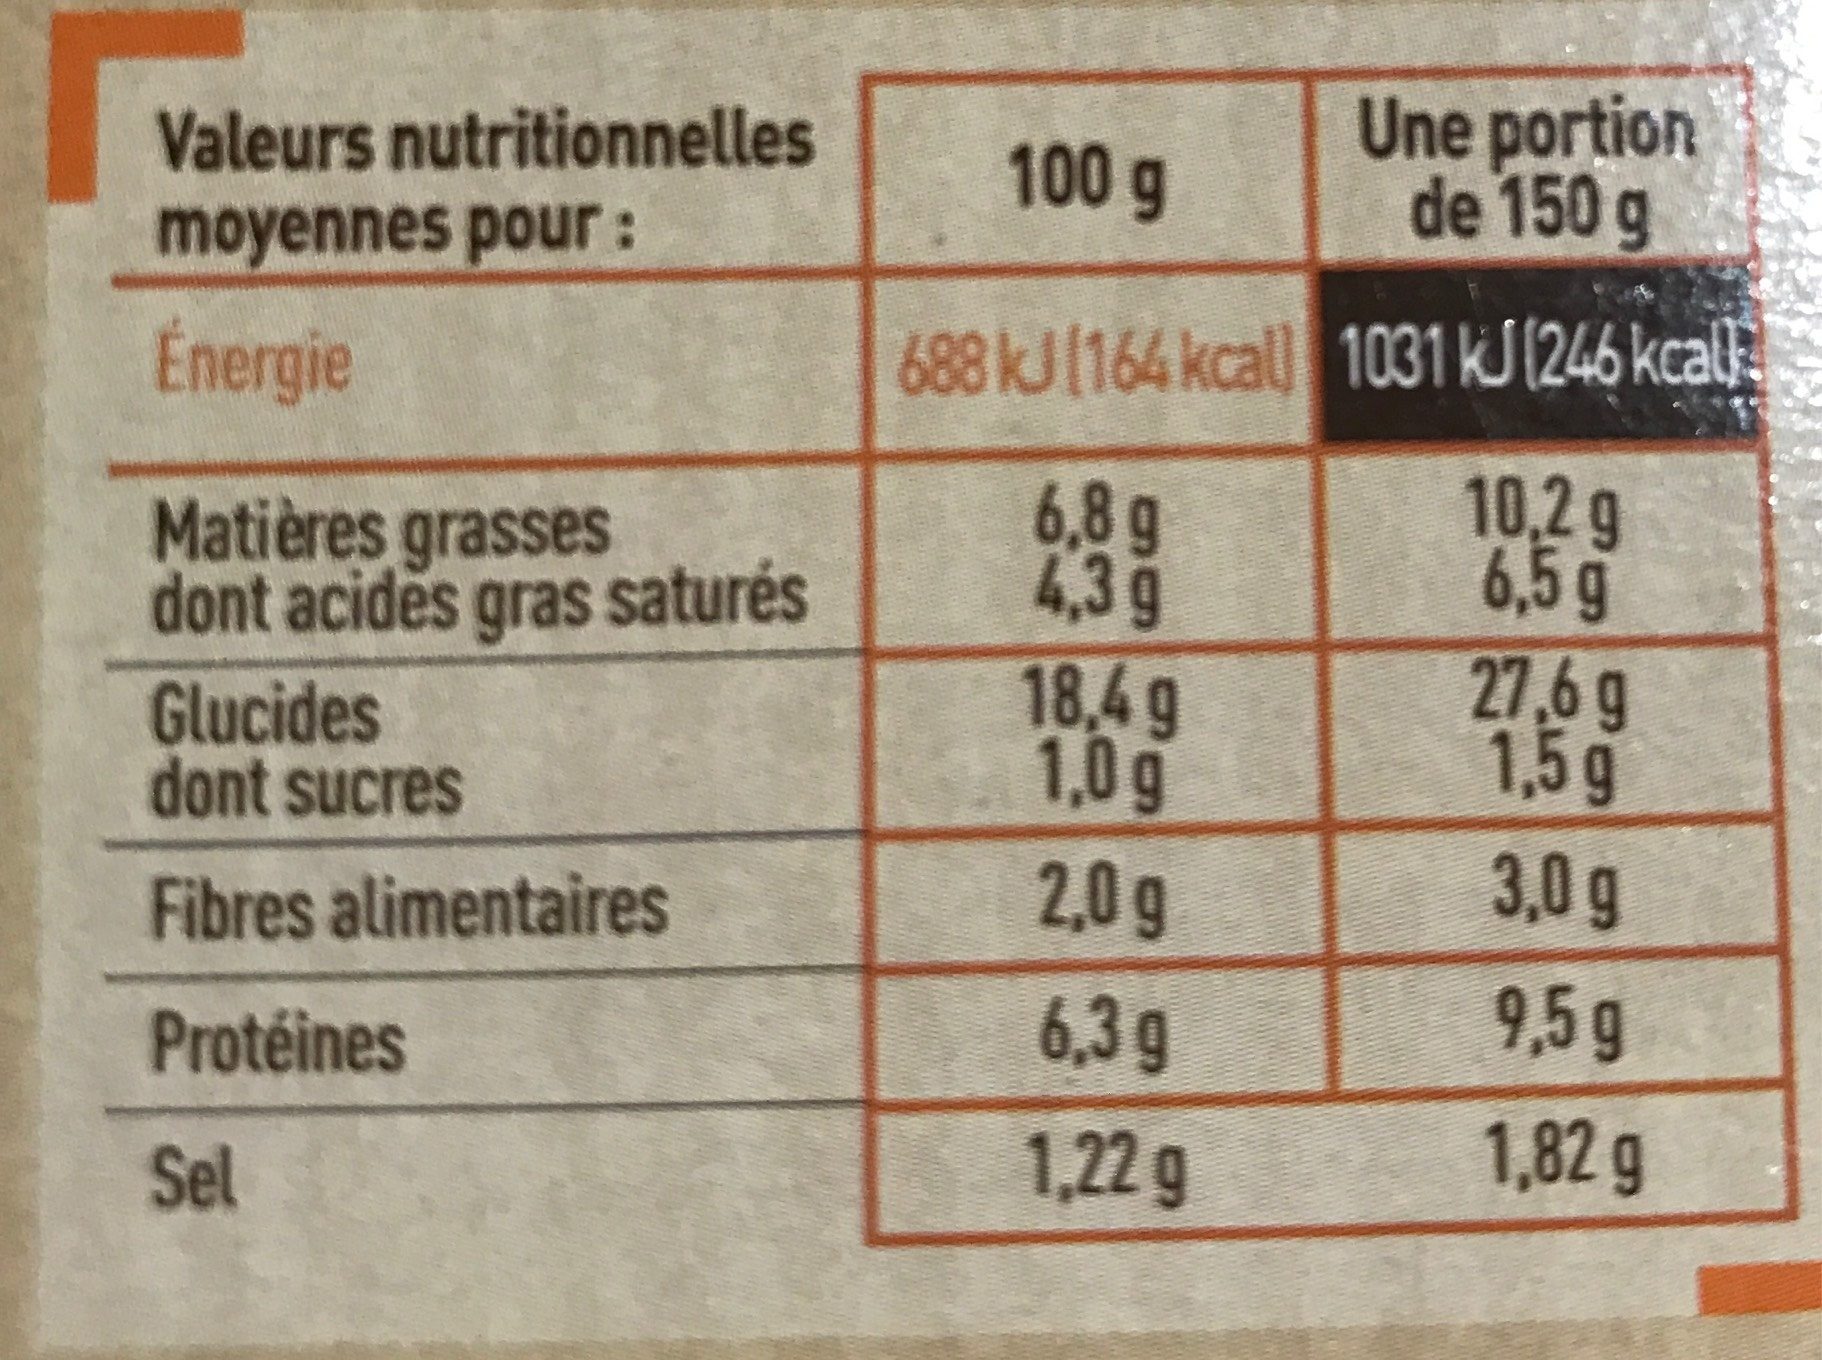 2 Galettes de blé noir paysanne - Nutrition facts - fr